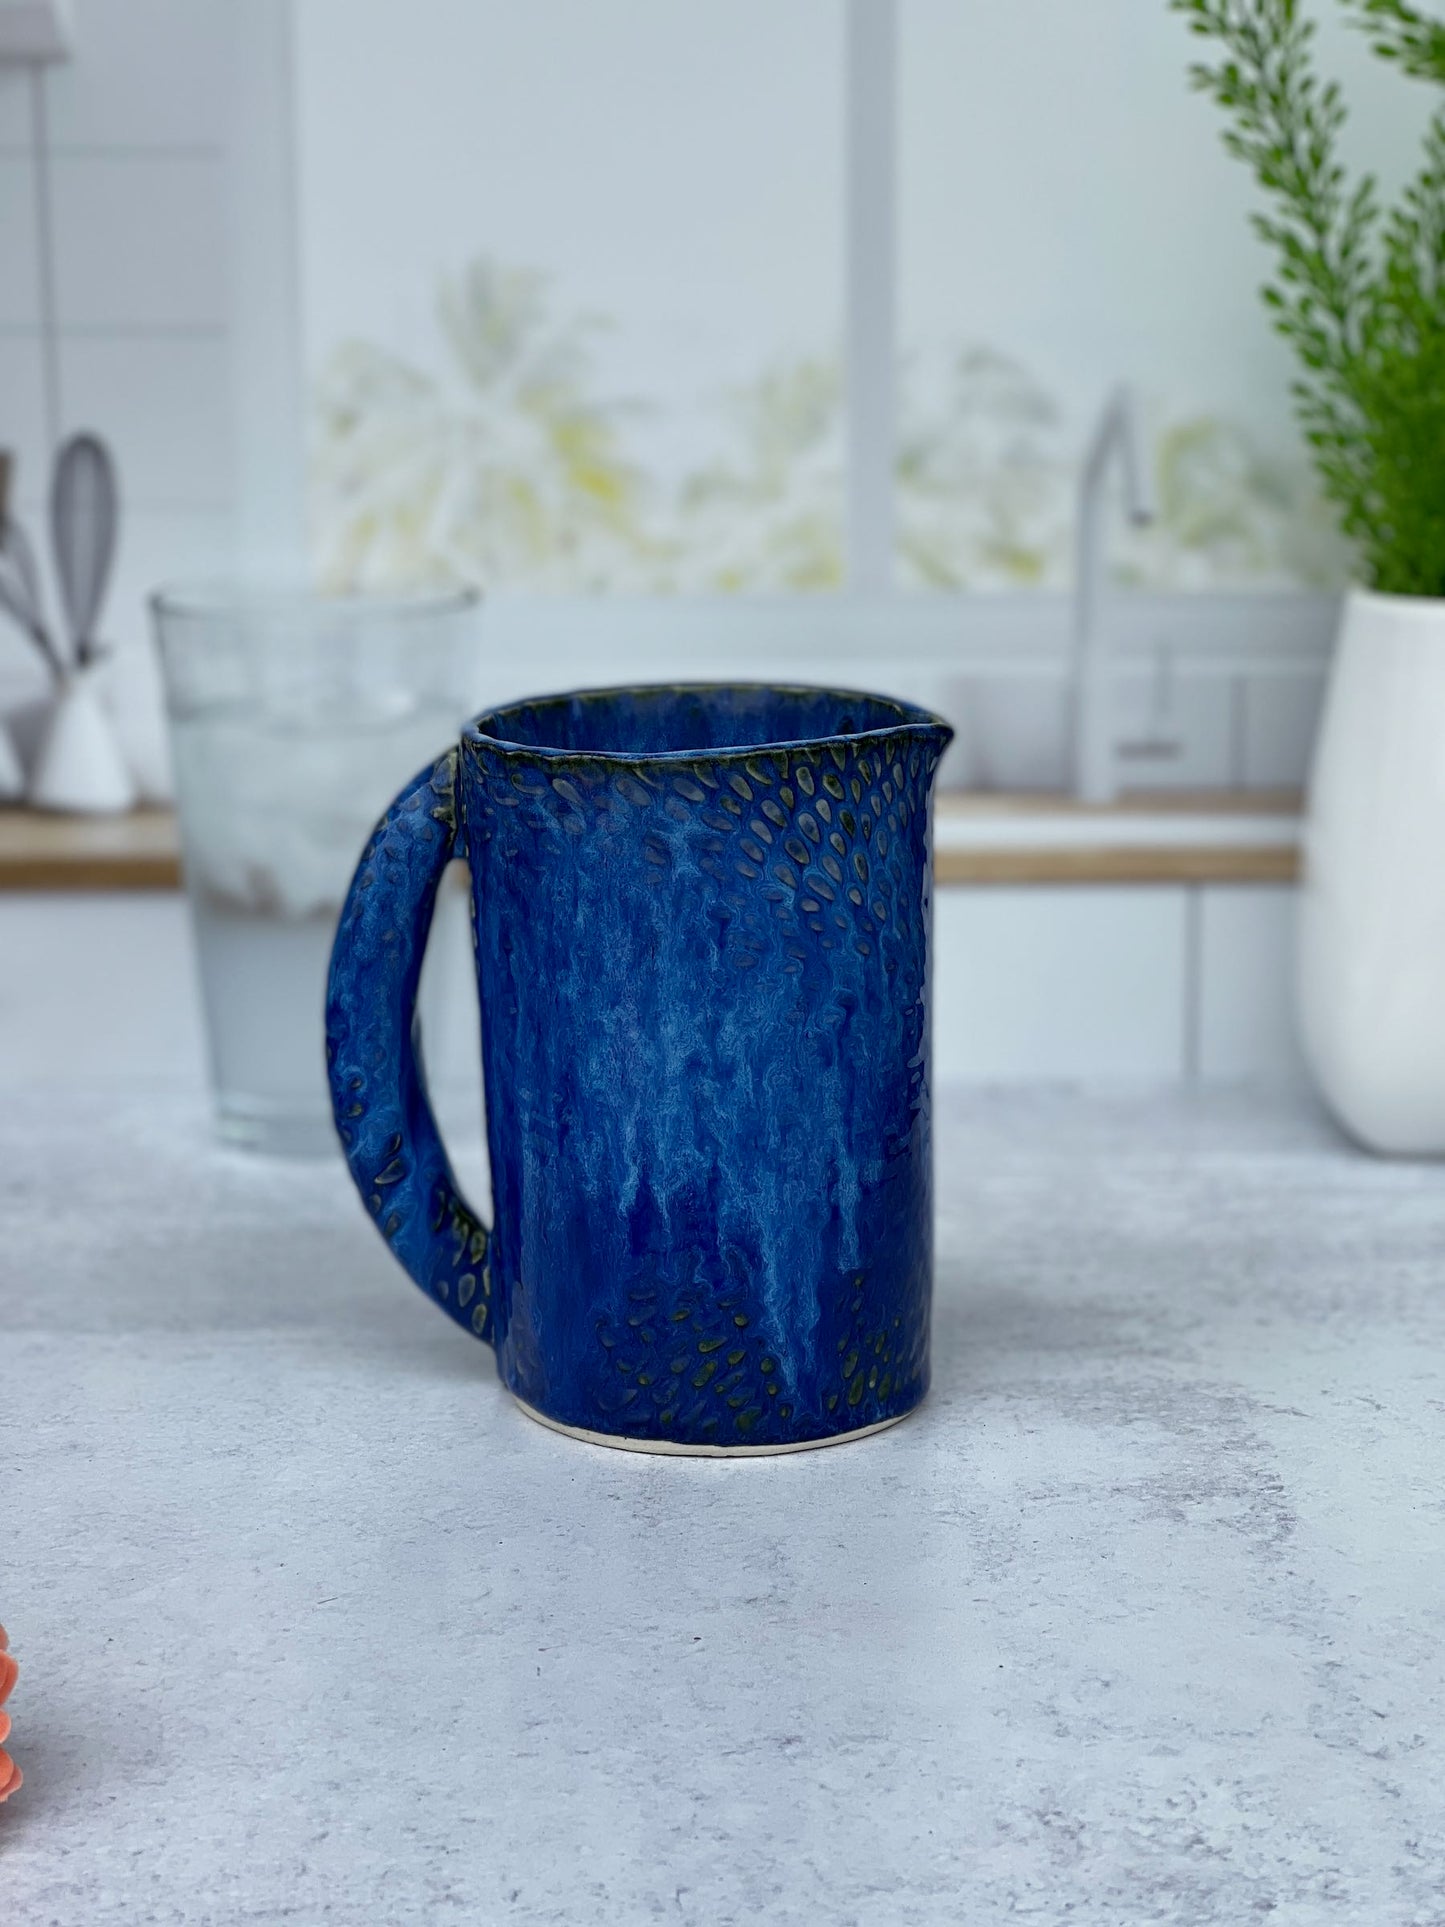 Slab-built Blue Textured Pitcher or Vase